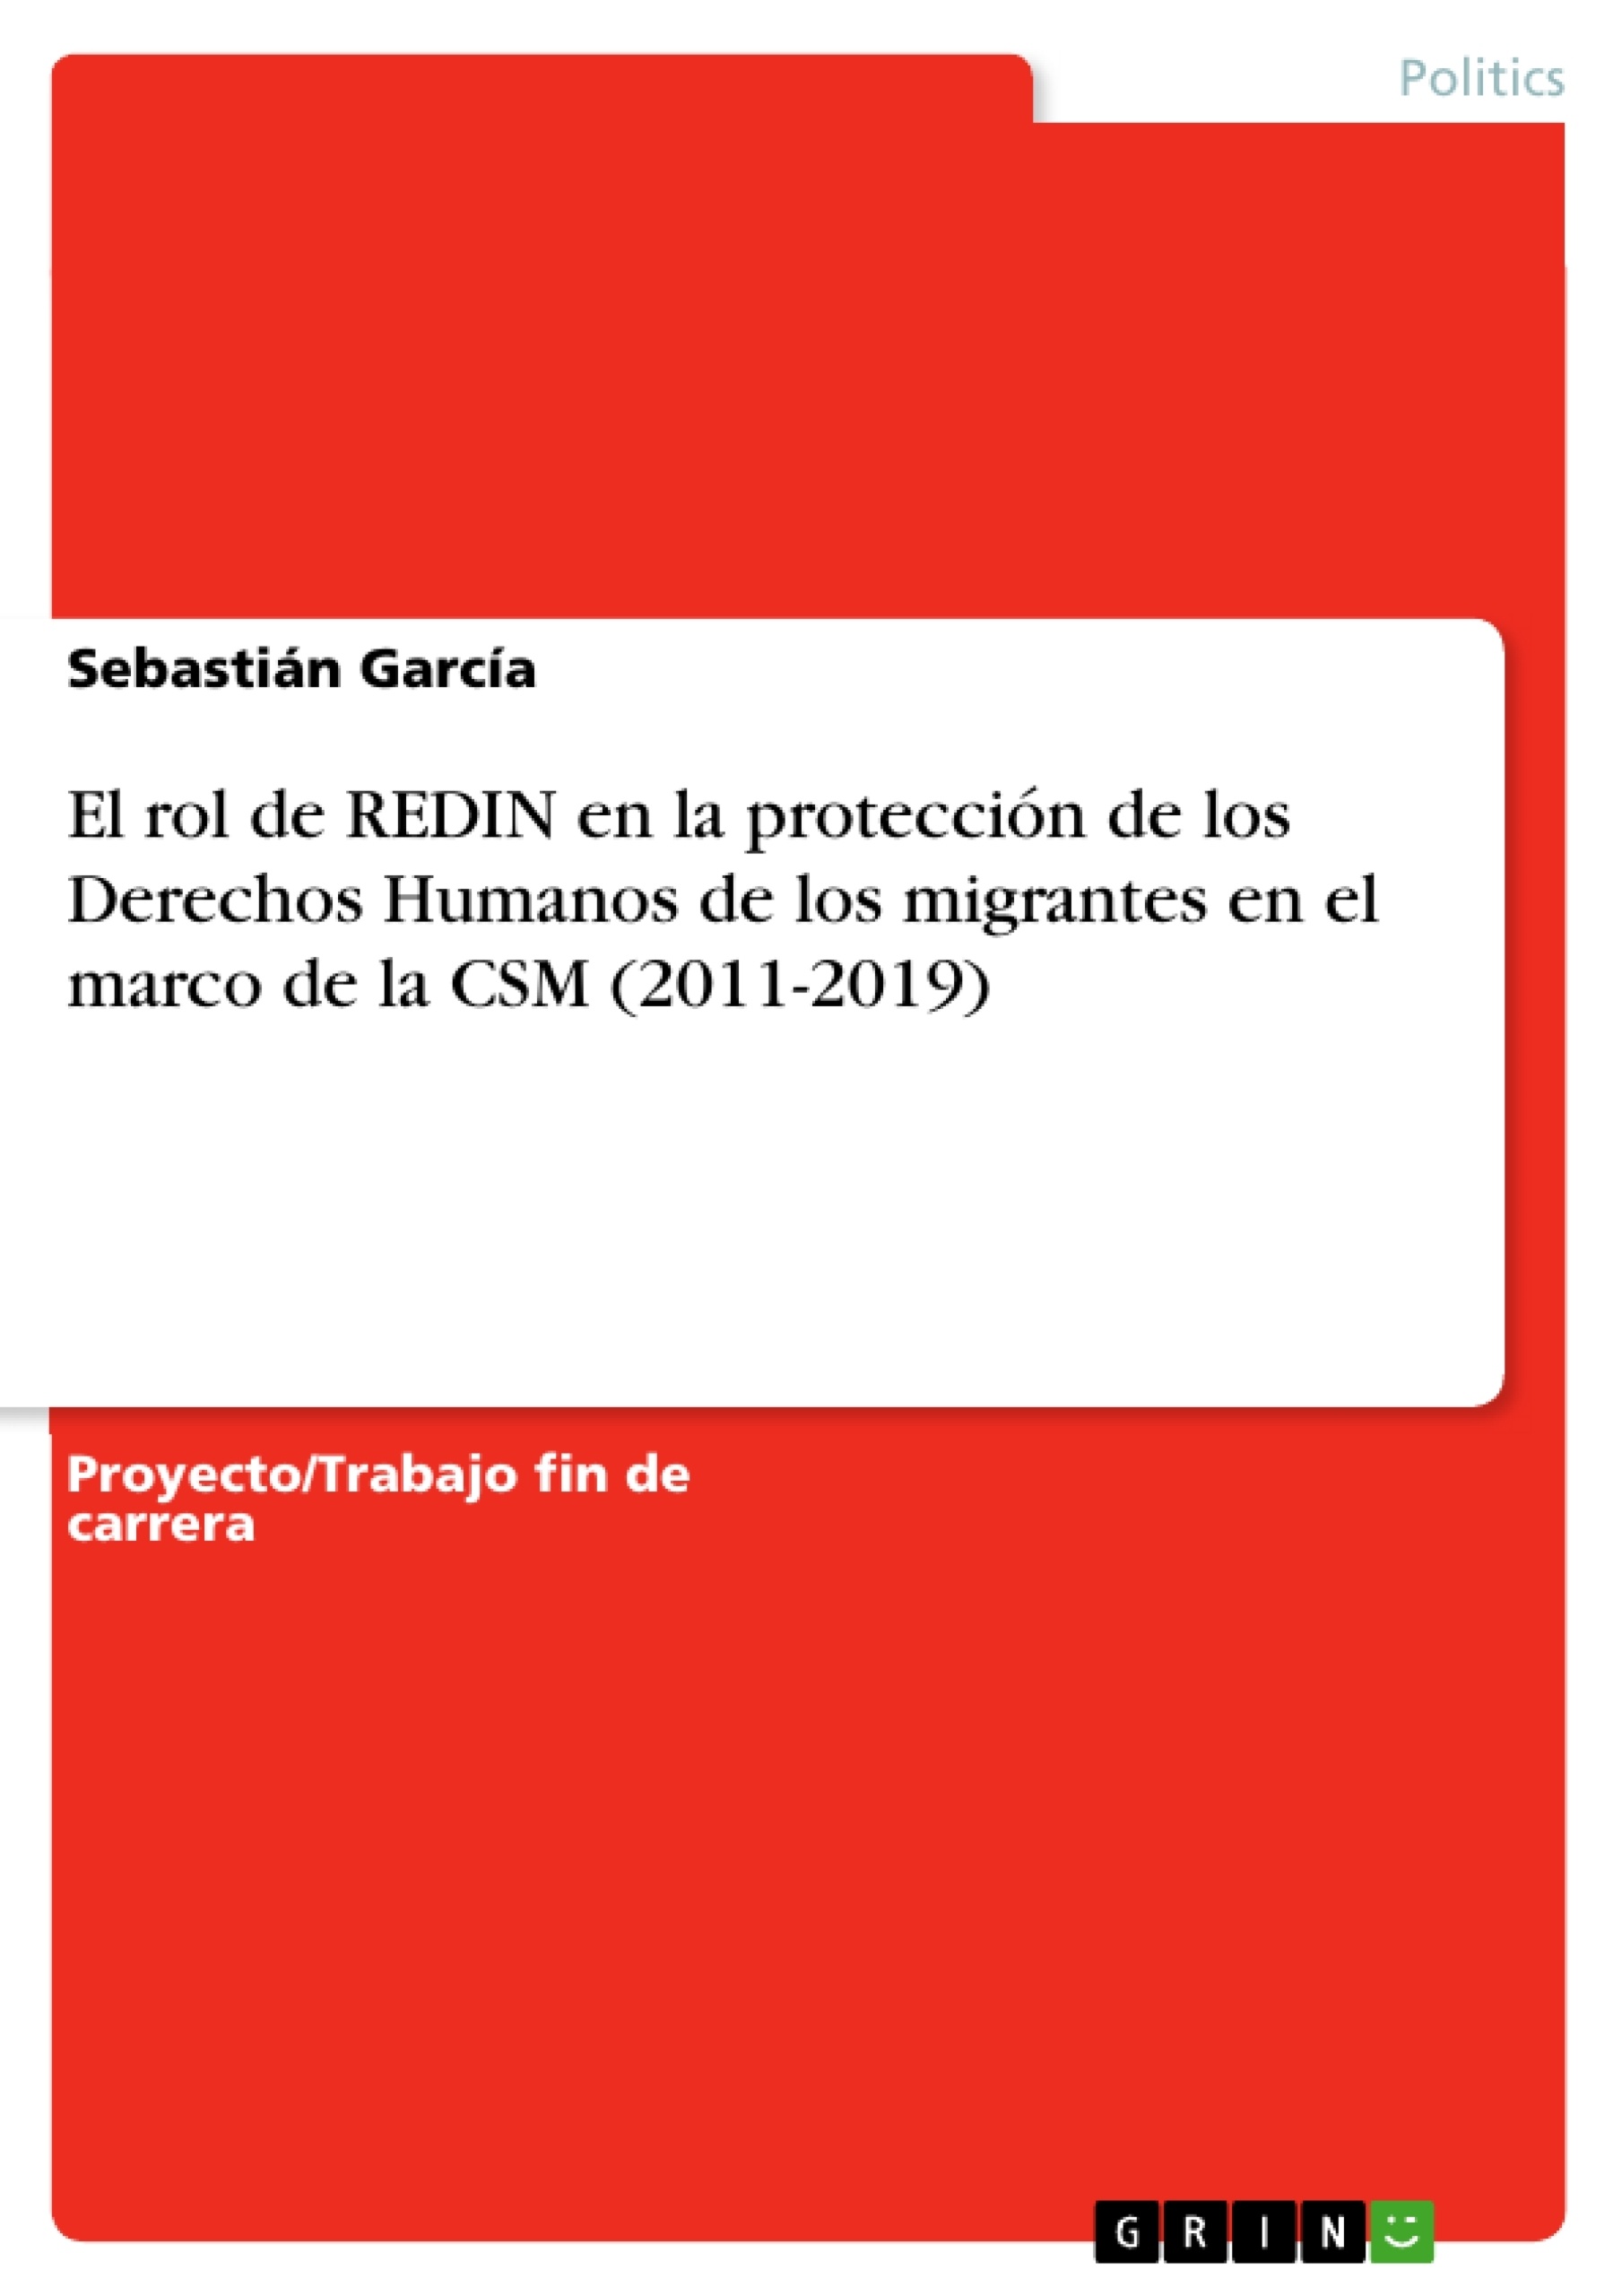 Título: El rol de REDIN en la protección de los Derechos Humanos de los migrantes en el marco de la CSM (2011-2019)